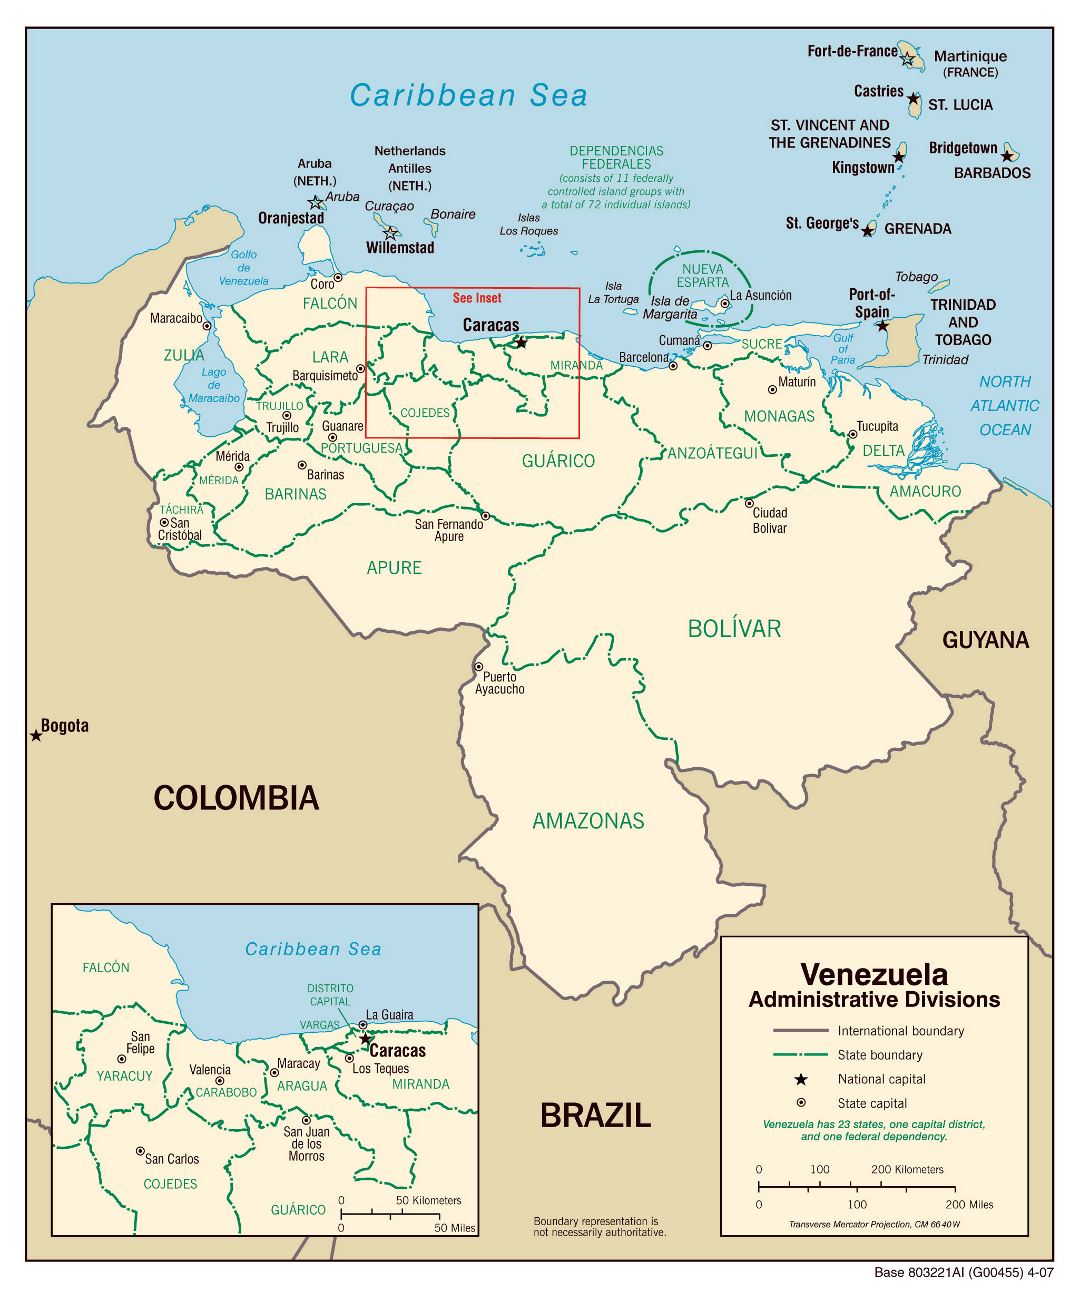 Крупномасштабная карта административных делений Венесуэлы - 2007